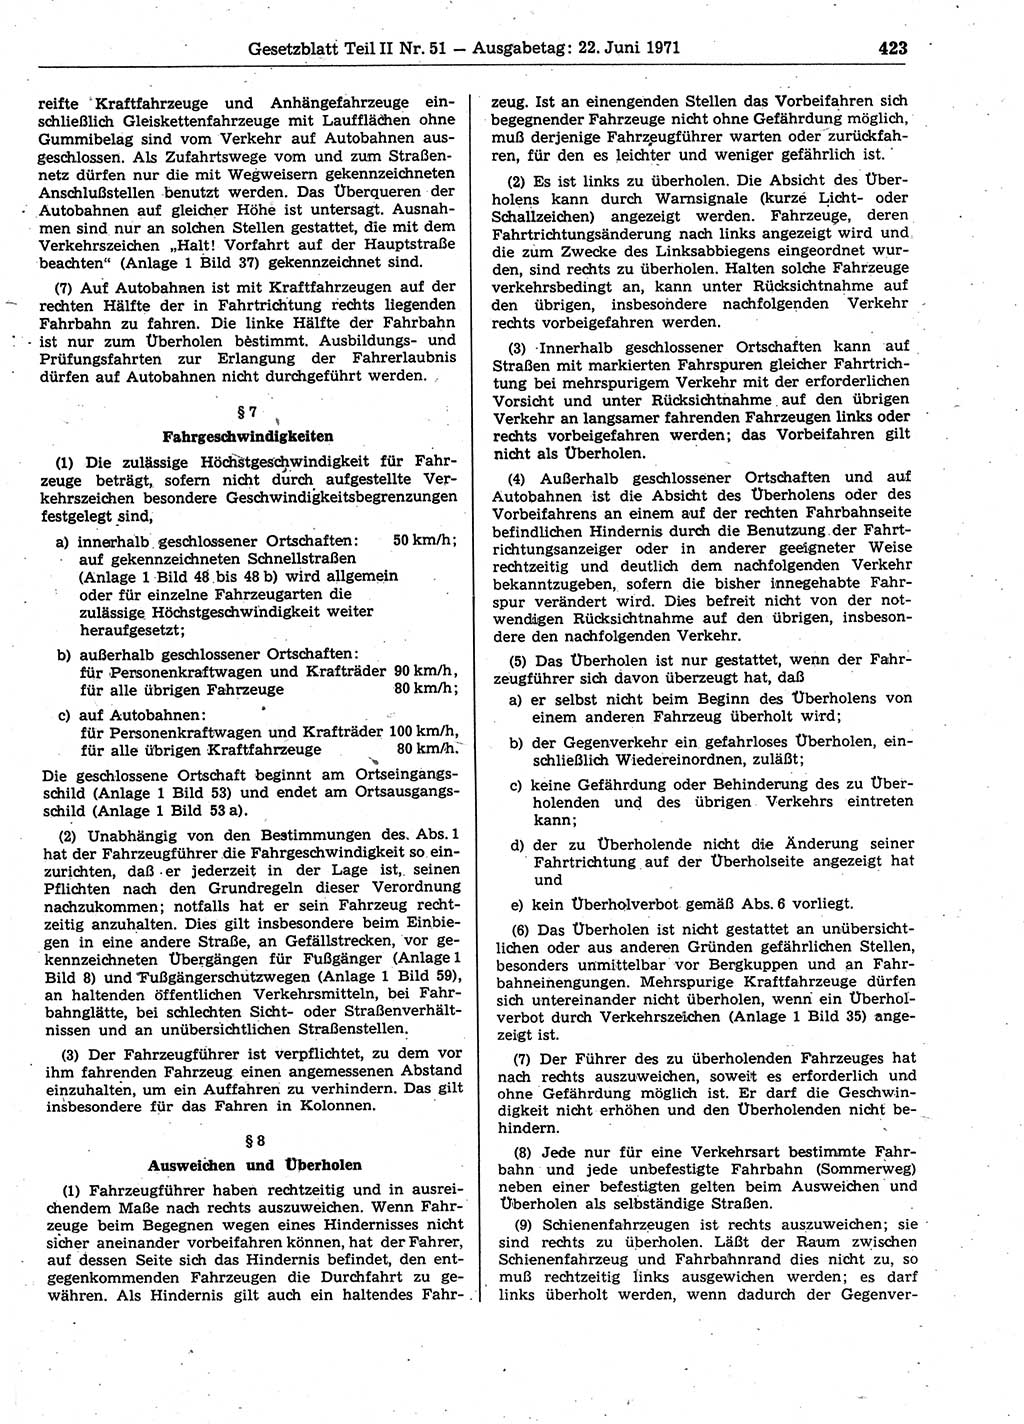 Gesetzblatt (GBl.) der Deutschen Demokratischen Republik (DDR) Teil ⅠⅠ 1971, Seite 423 (GBl. DDR ⅠⅠ 1971, S. 423)